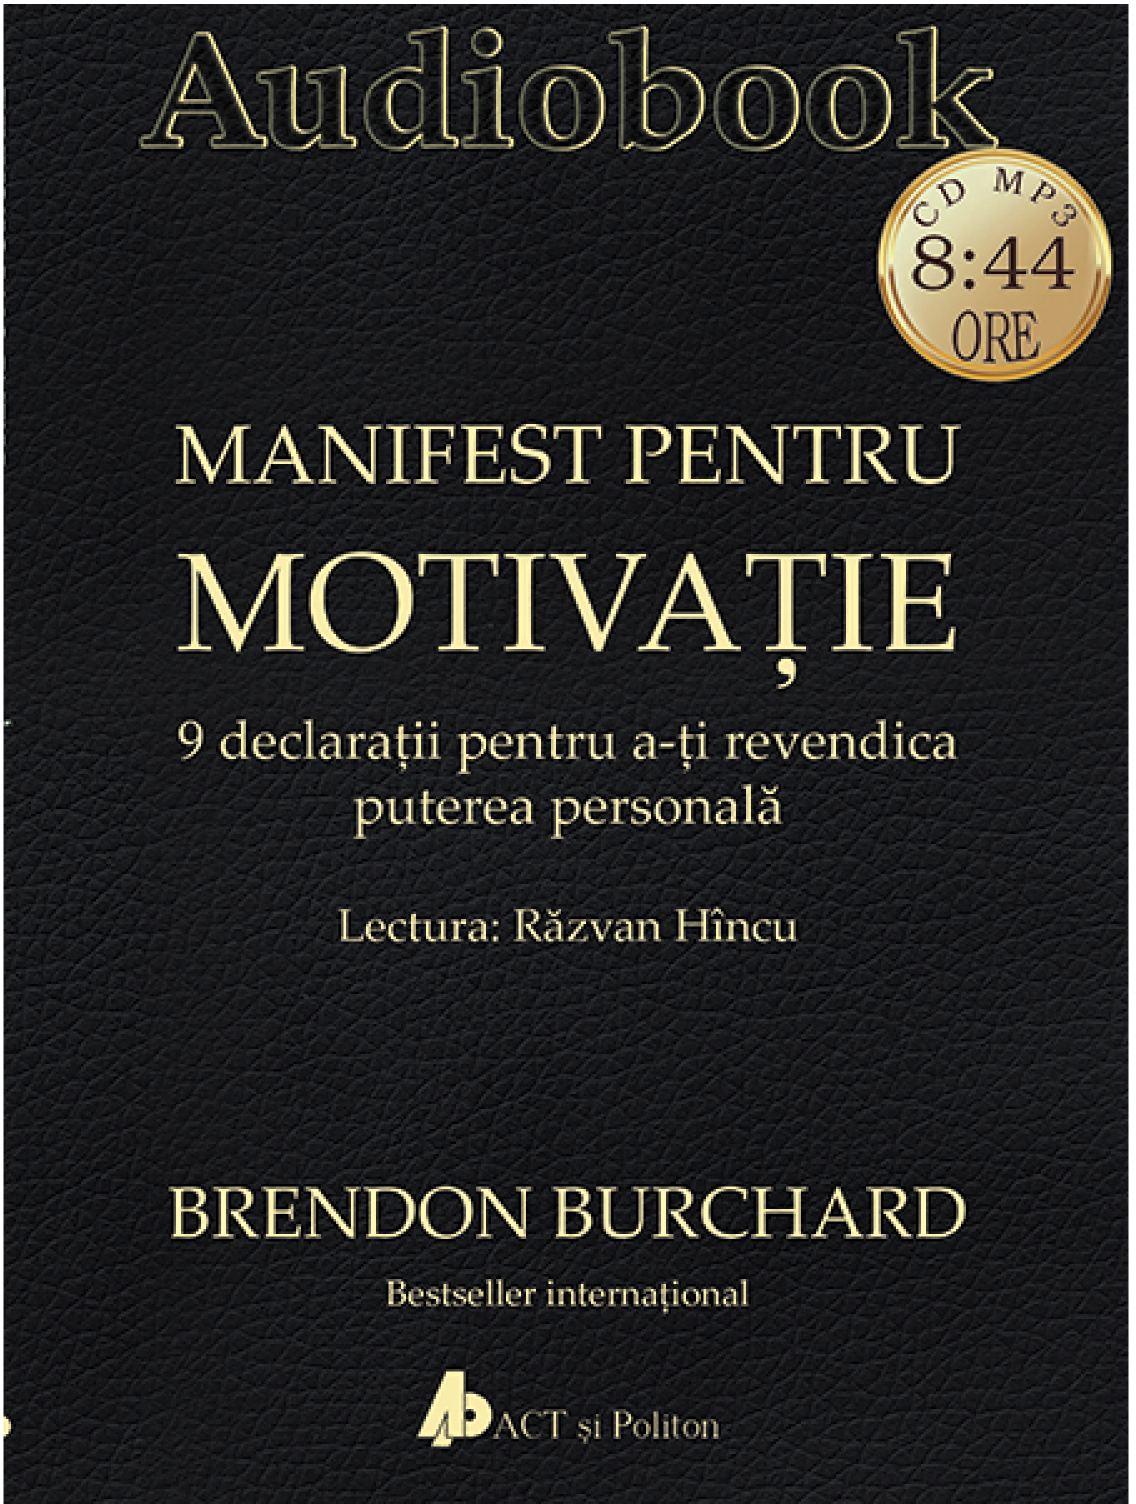 Manifest pentru motivatie | Brendon Burchard Audiobooks imagine 2022